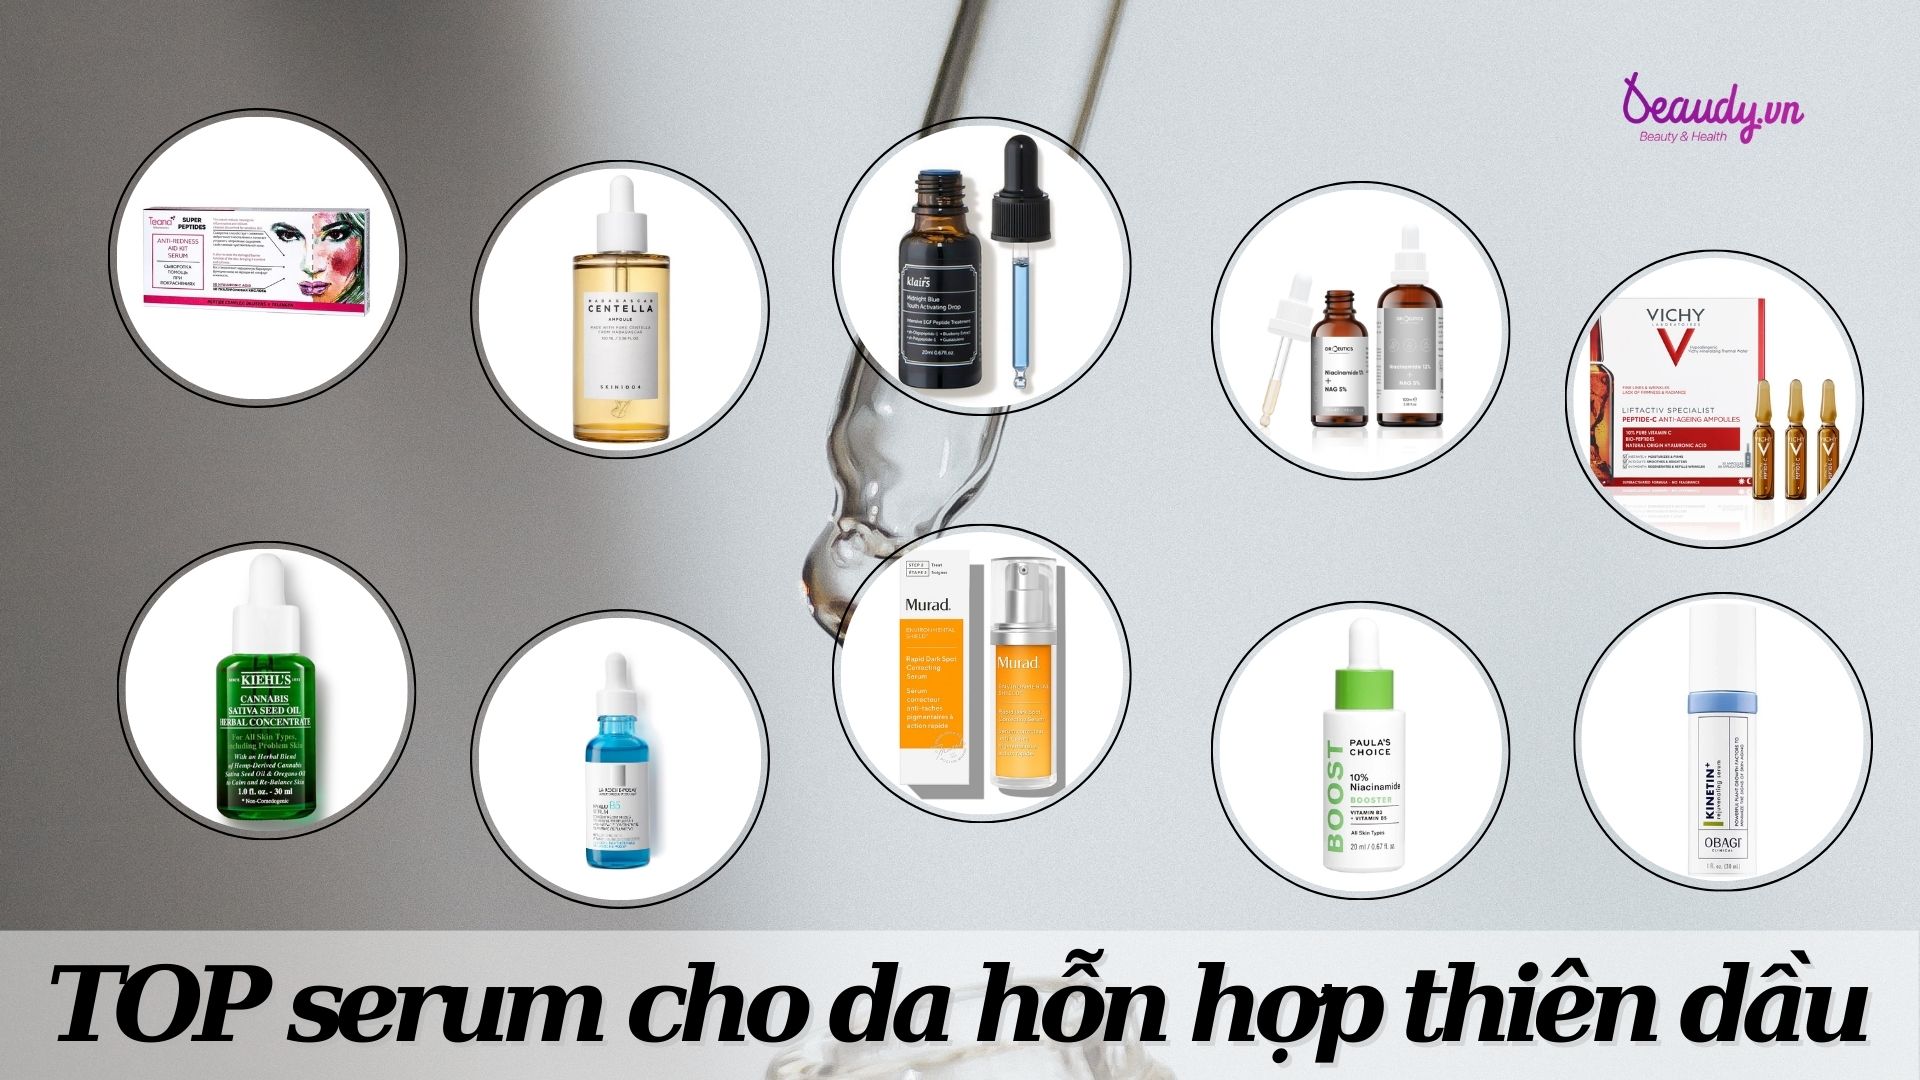 TOP 10 serum cho da hỗn hợp thiên dầu: cải thiện tình trạng da và nuôi dưỡng da khỏe đẹp - Beaudy.vn